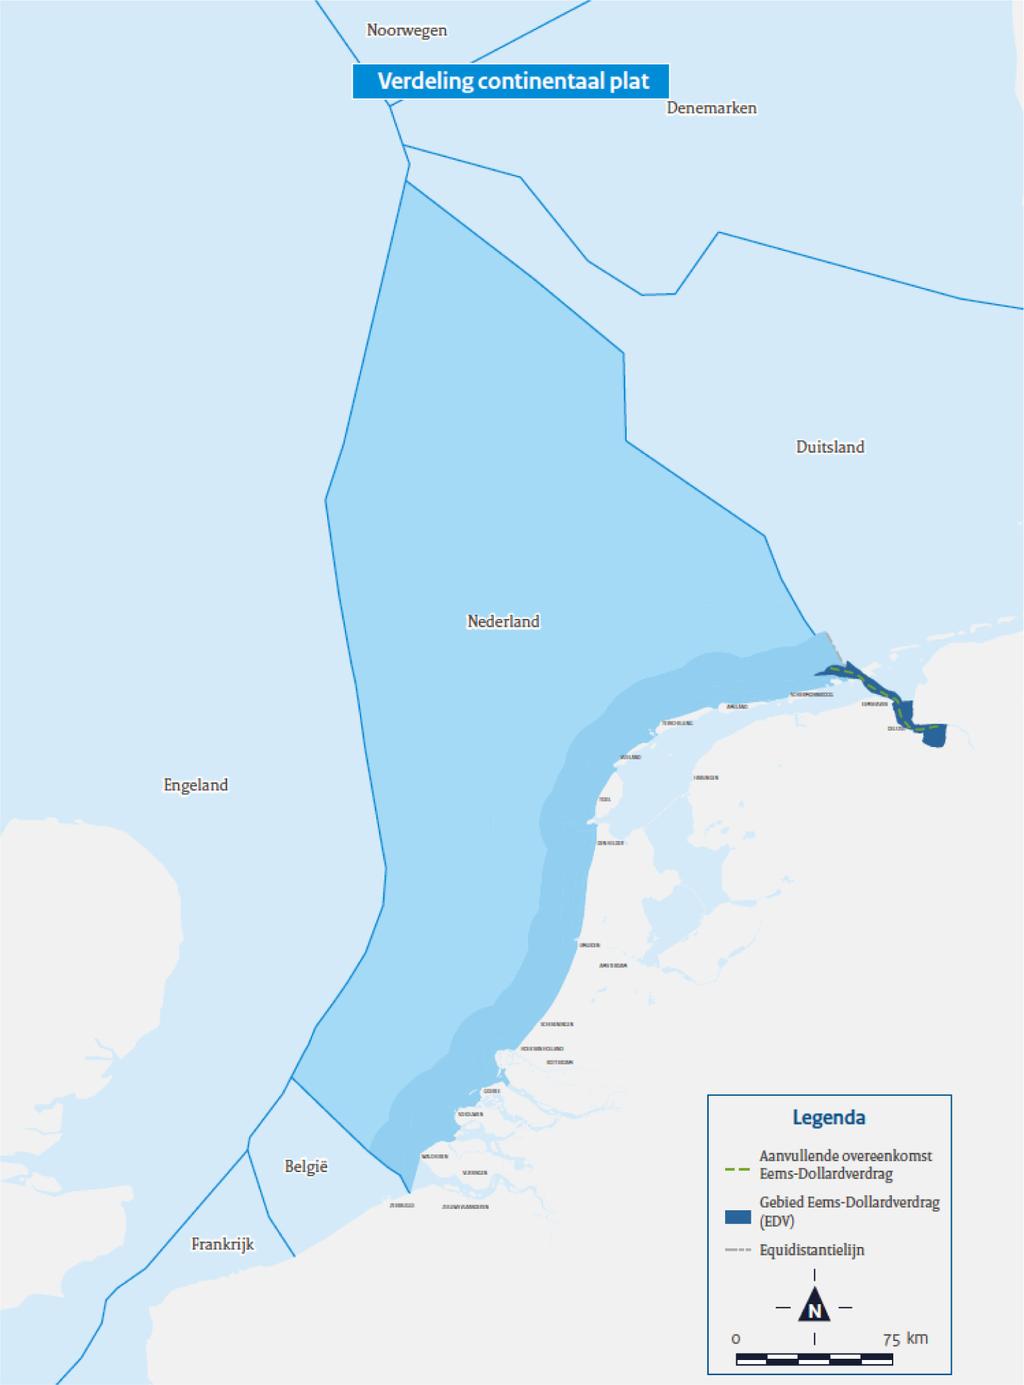 Figuur 3 Verdeling van het continentaal plat van de Noordzee 4.